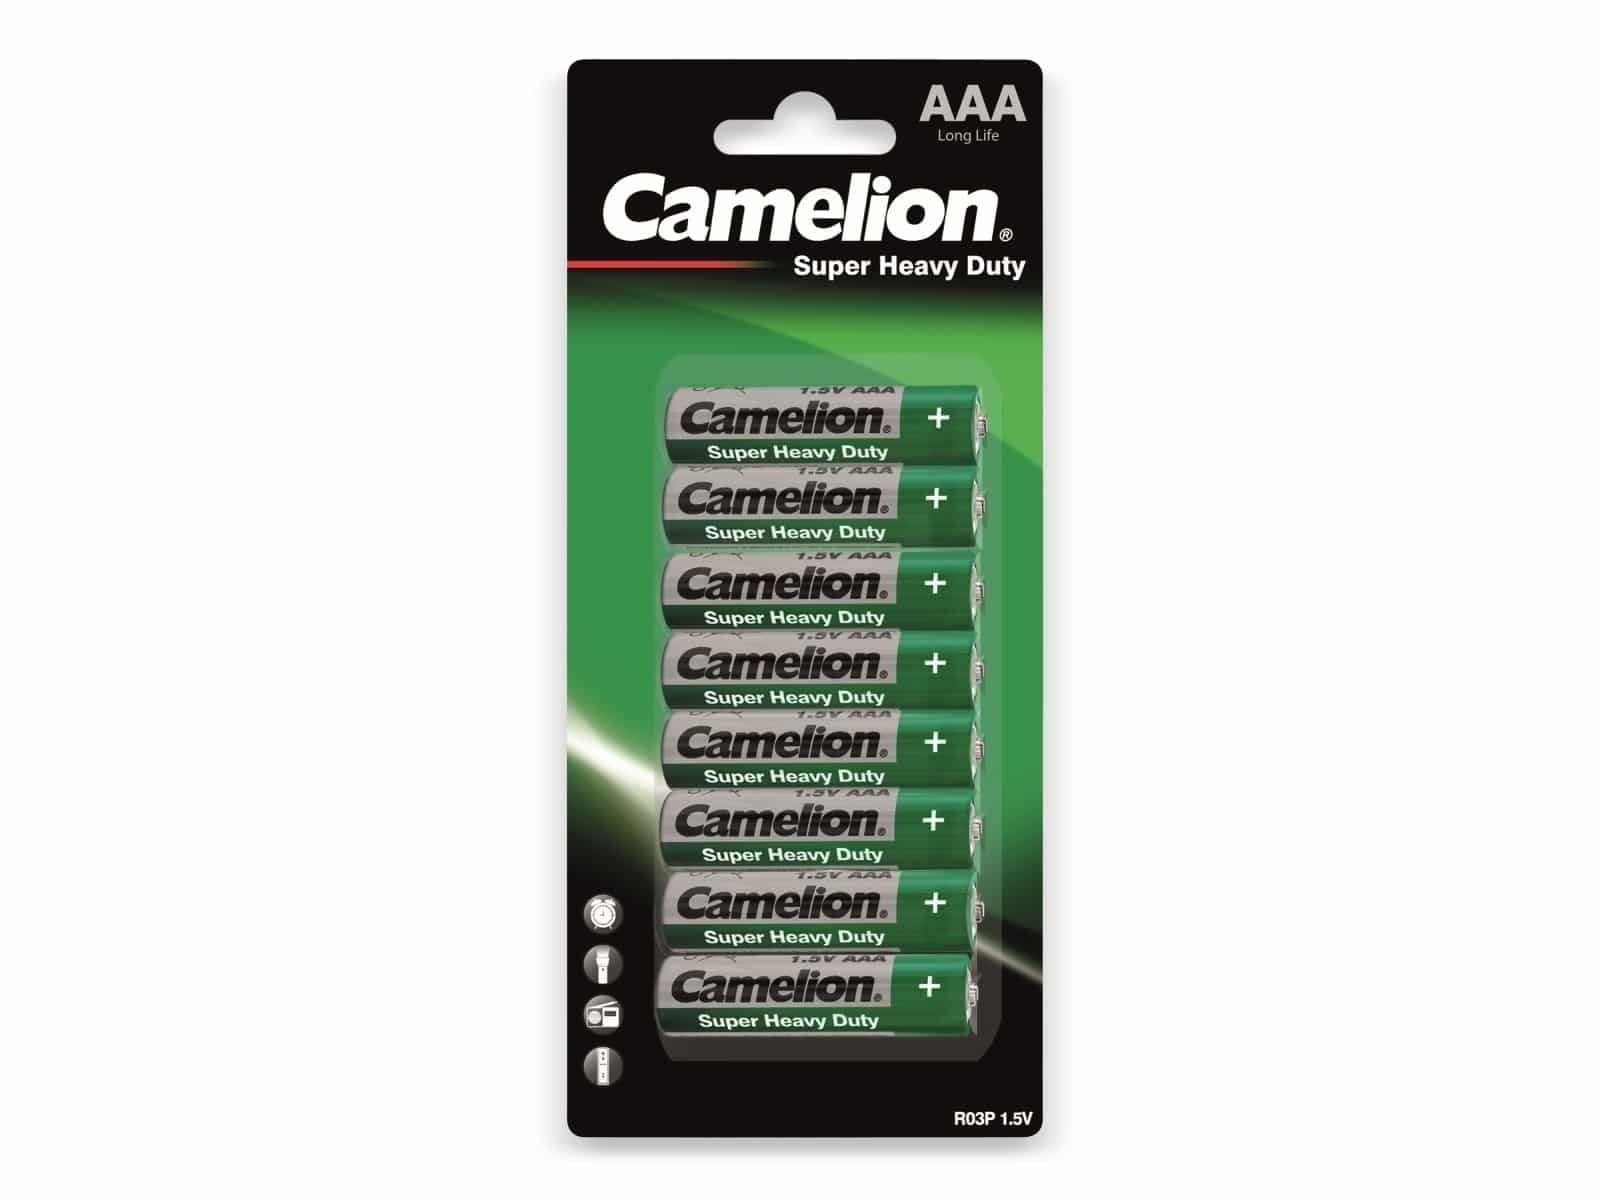 CAMELION Duty 8 Heavy Super Camelion Batterie Micro-Batterie, Stück